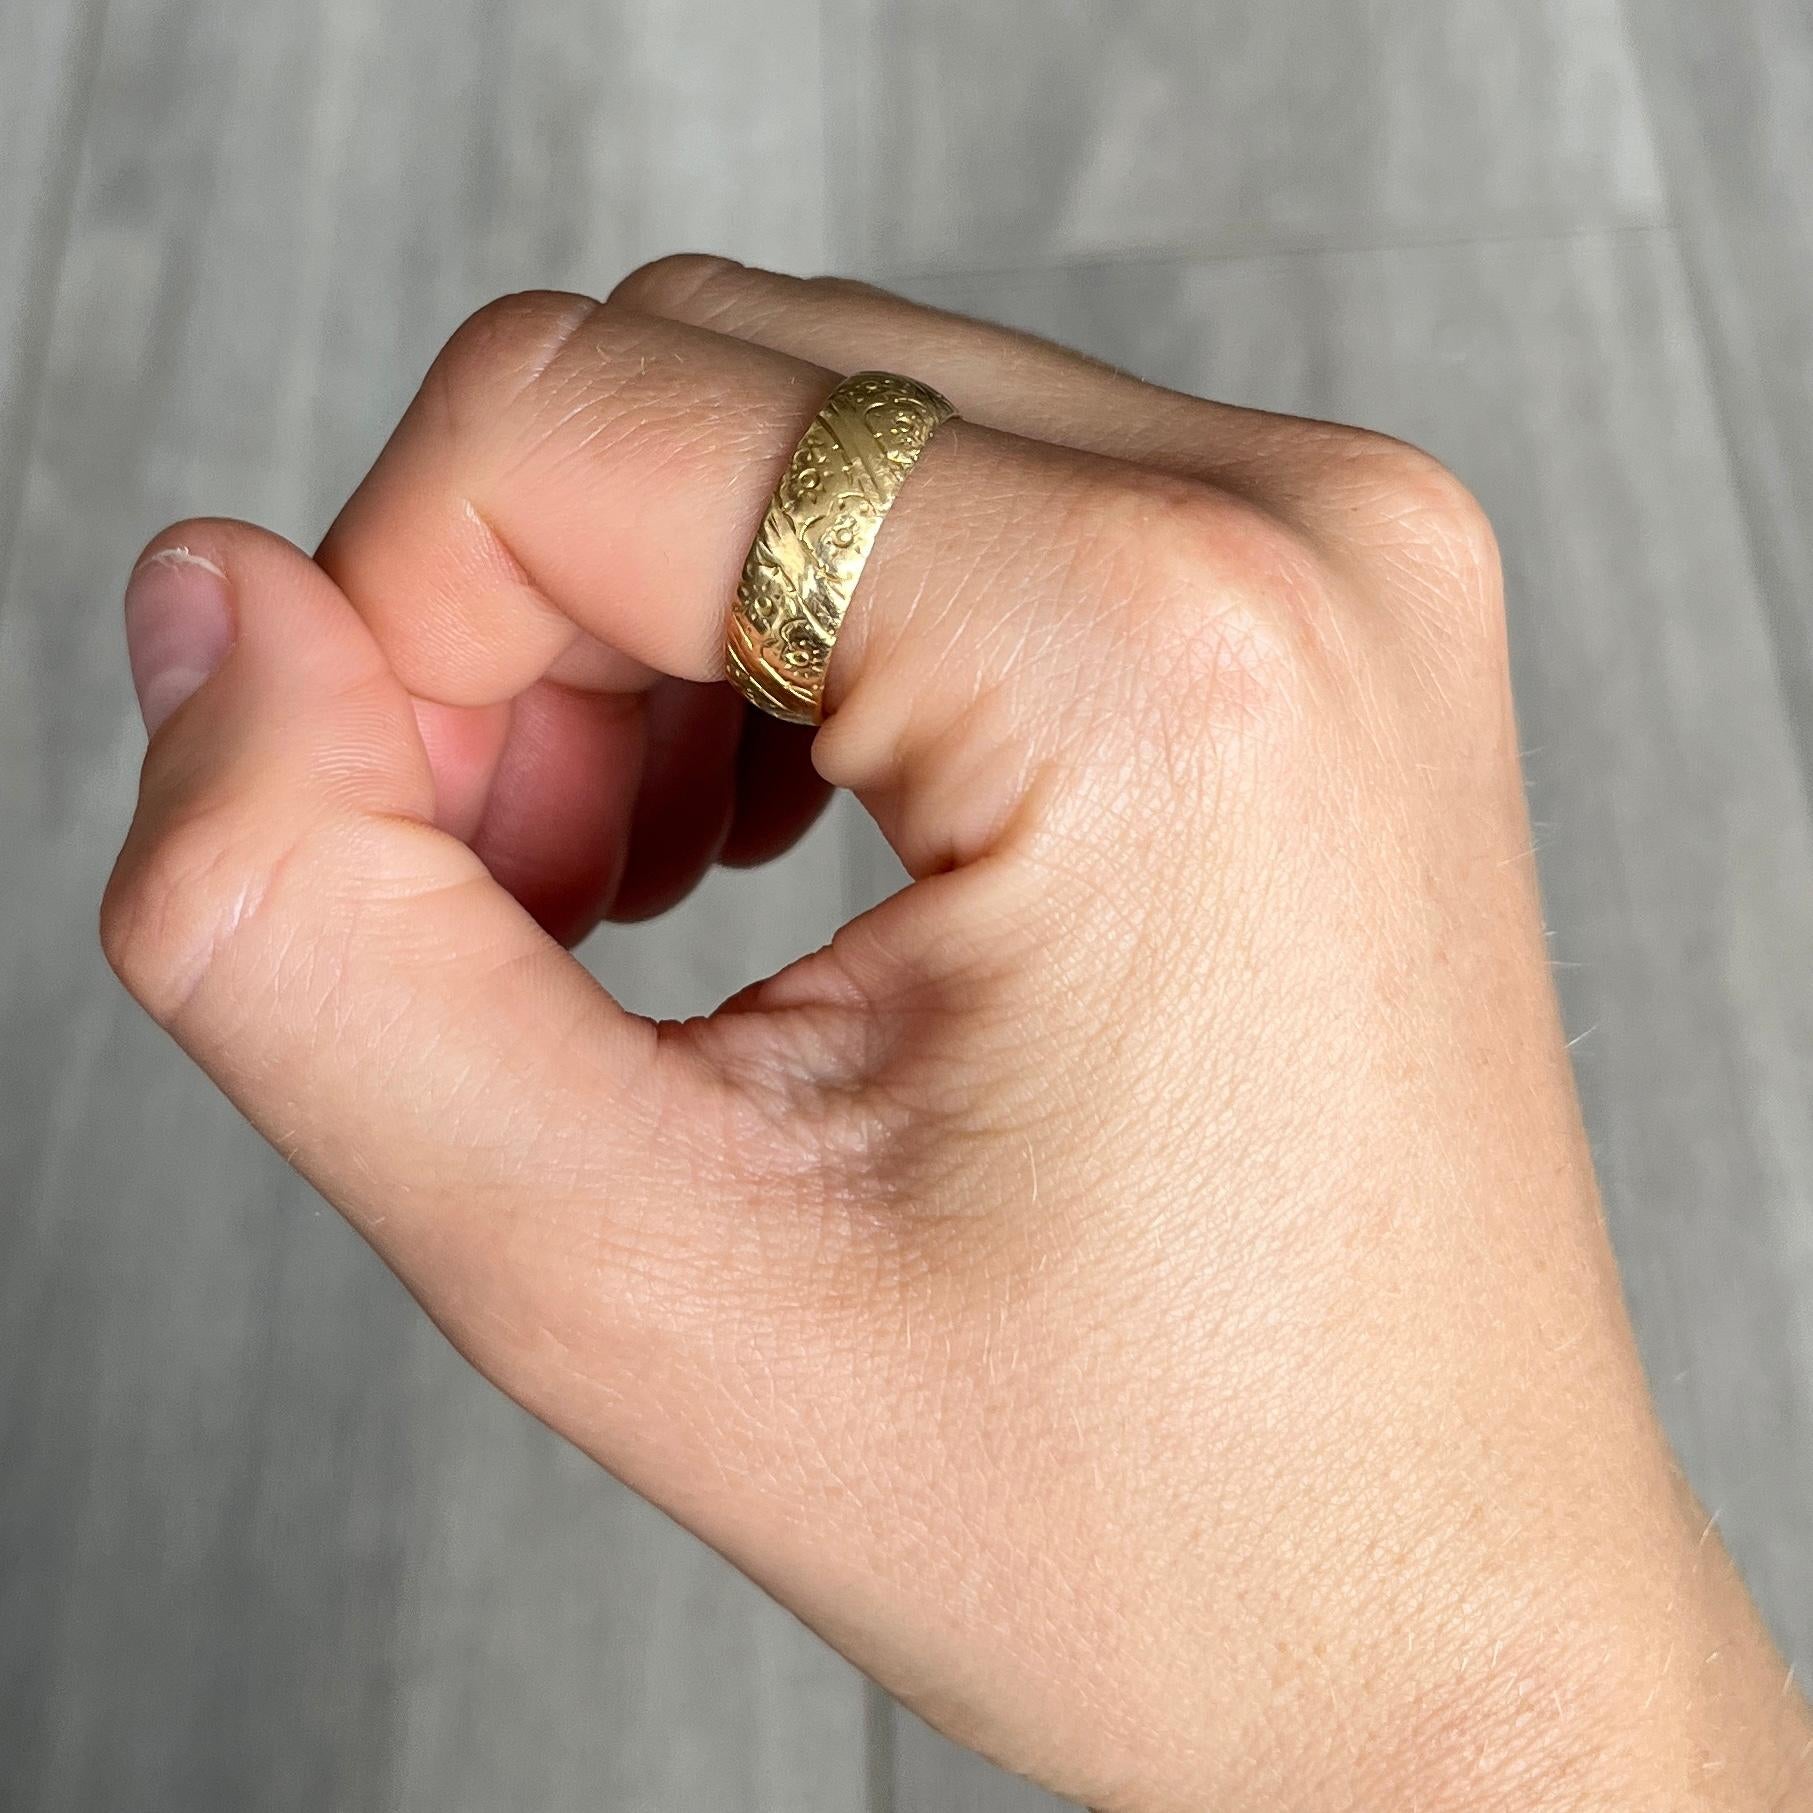 Die Gravur auf diesem 18-karätigen gelben Band ist wunderschön. Dieser Ring eignet sich sowohl für die Hochzeit als auch für das tägliche Tragen. Vollständig gestempelt Birmingham 1971. 

Ring Größe: S oder 9
Breite des Bandes: 6,5 mm

Gewicht: 5,4 g